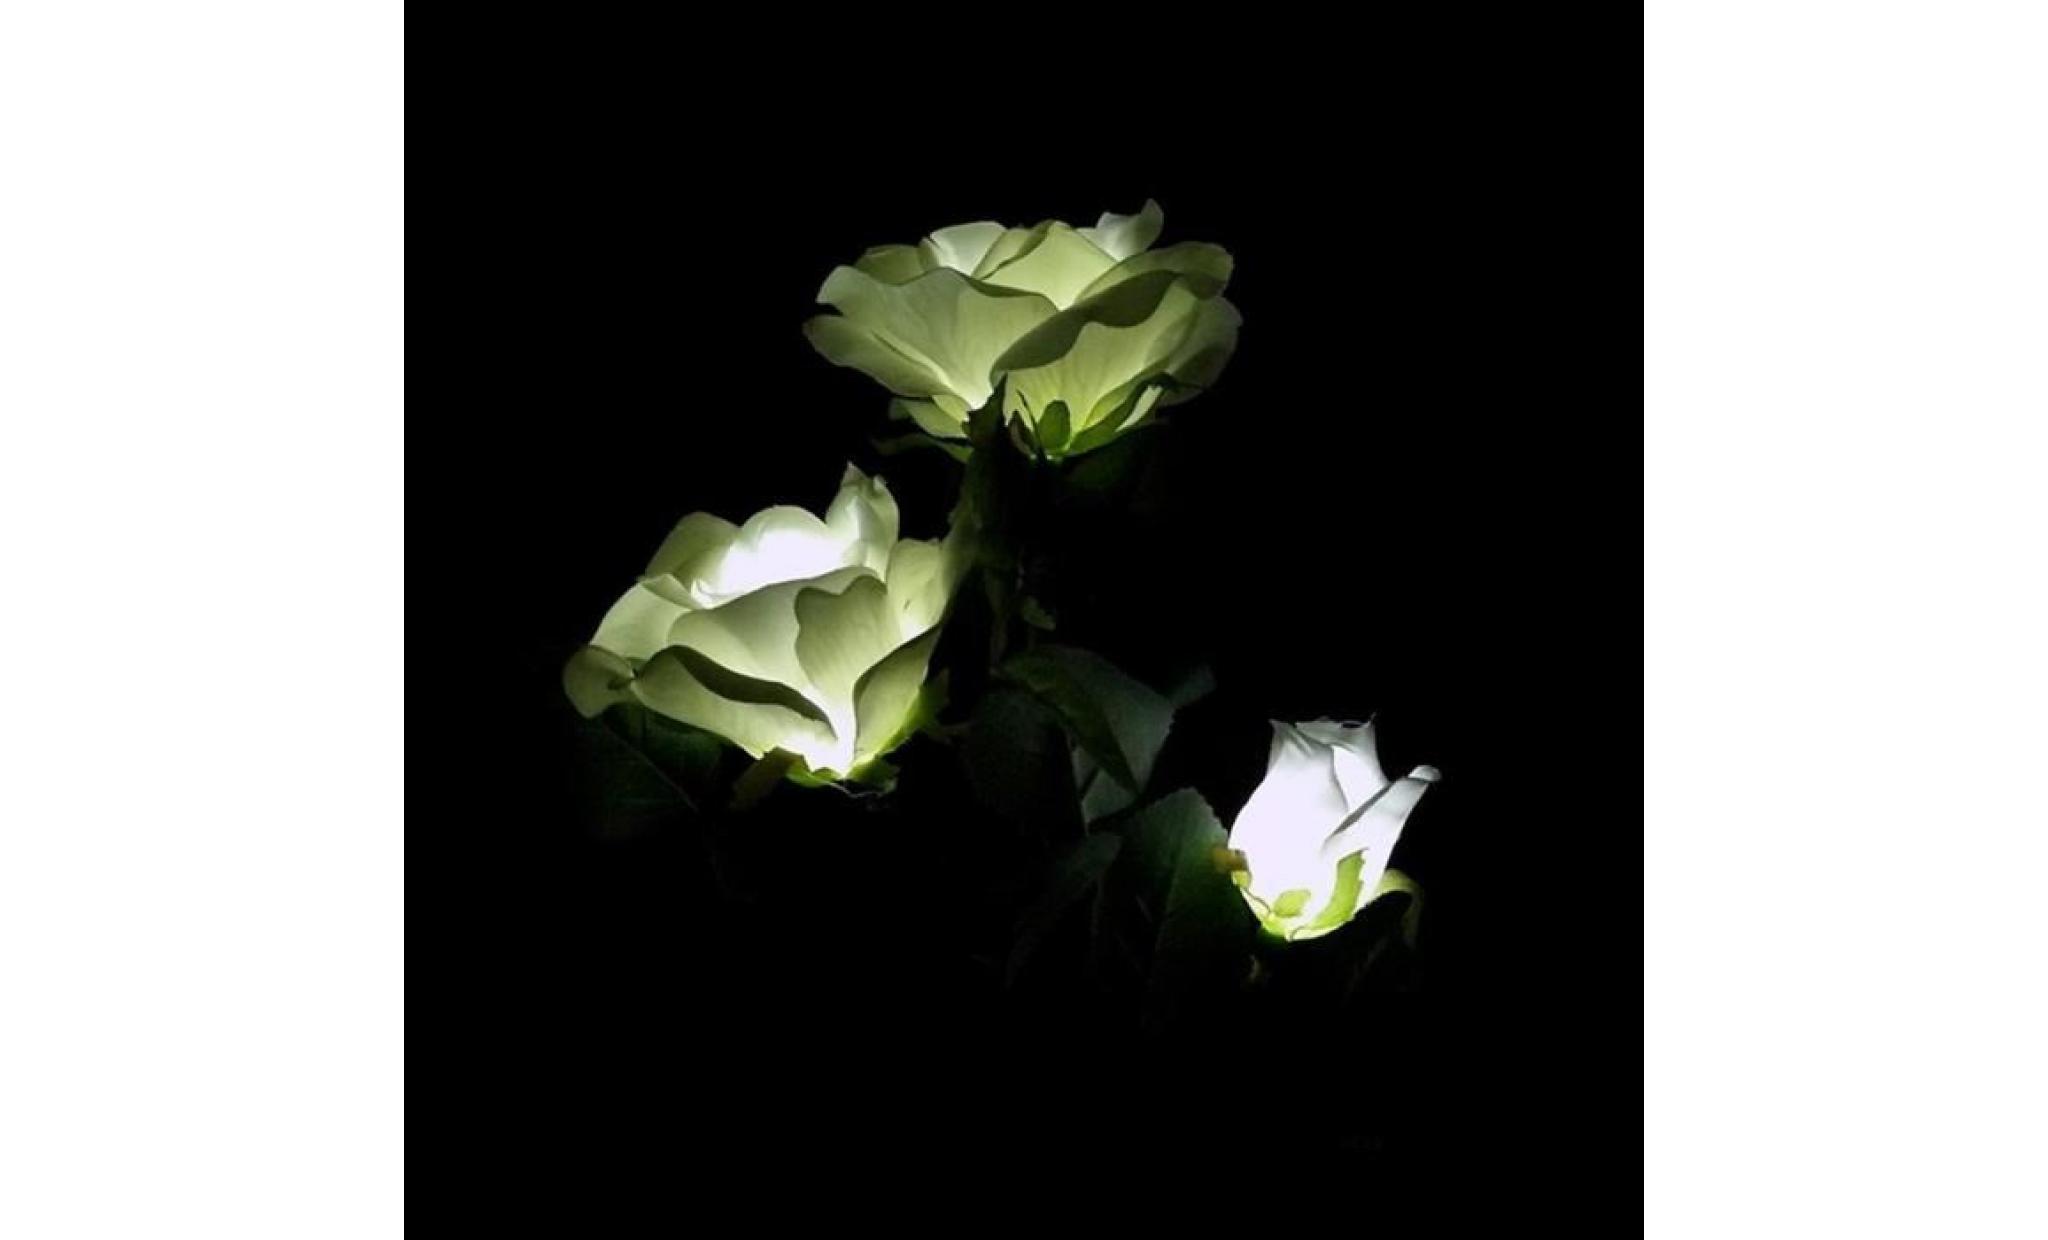 lampe dé jardin 3 roses blanches, lampes solaires, lampes à gazon gd18 pas cher